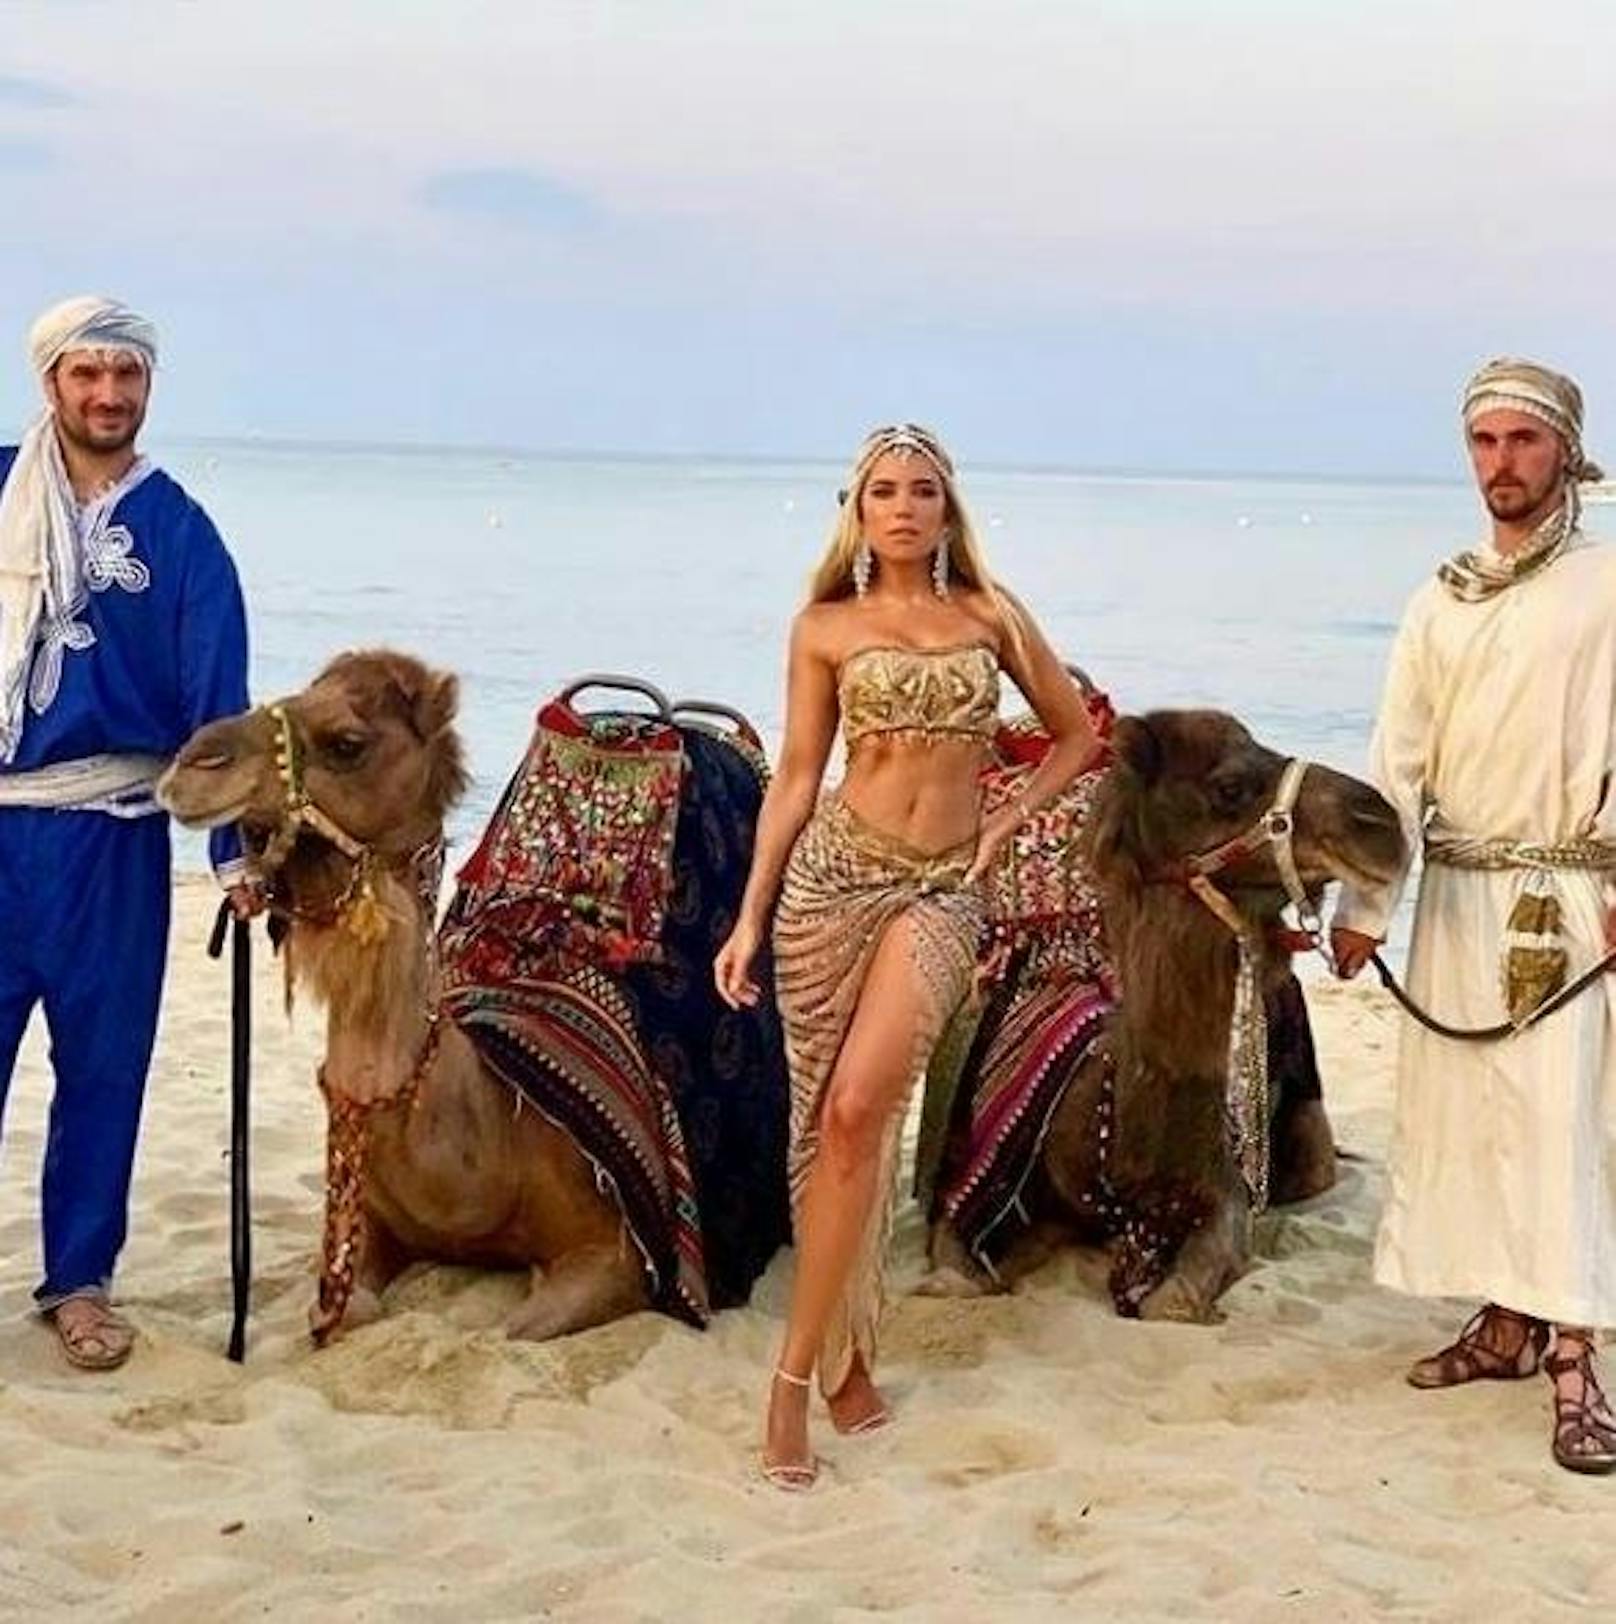 24.07.2019: Bei einer orientalischen Party in St. Tropez wurde Sylvie Meis zur exotischen Bauchtänzerin. Die Kamele konnten ihre Begeisterung kaum in Zaum halten.